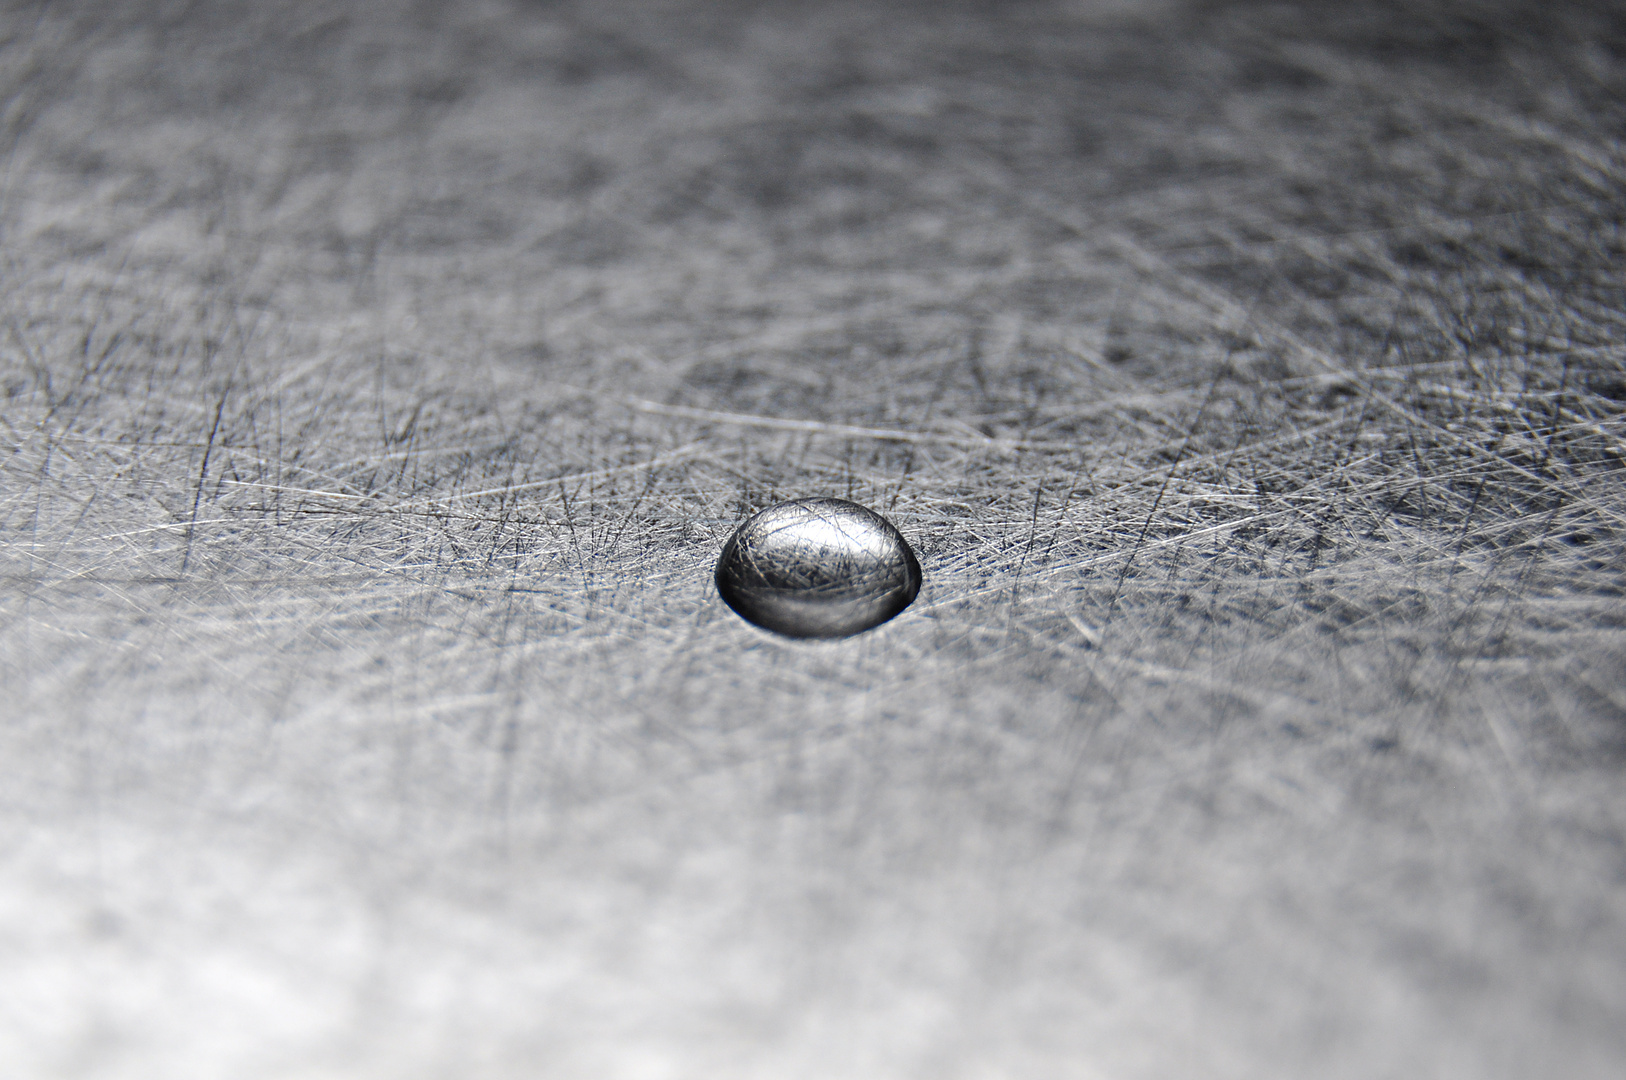 water drops on metal